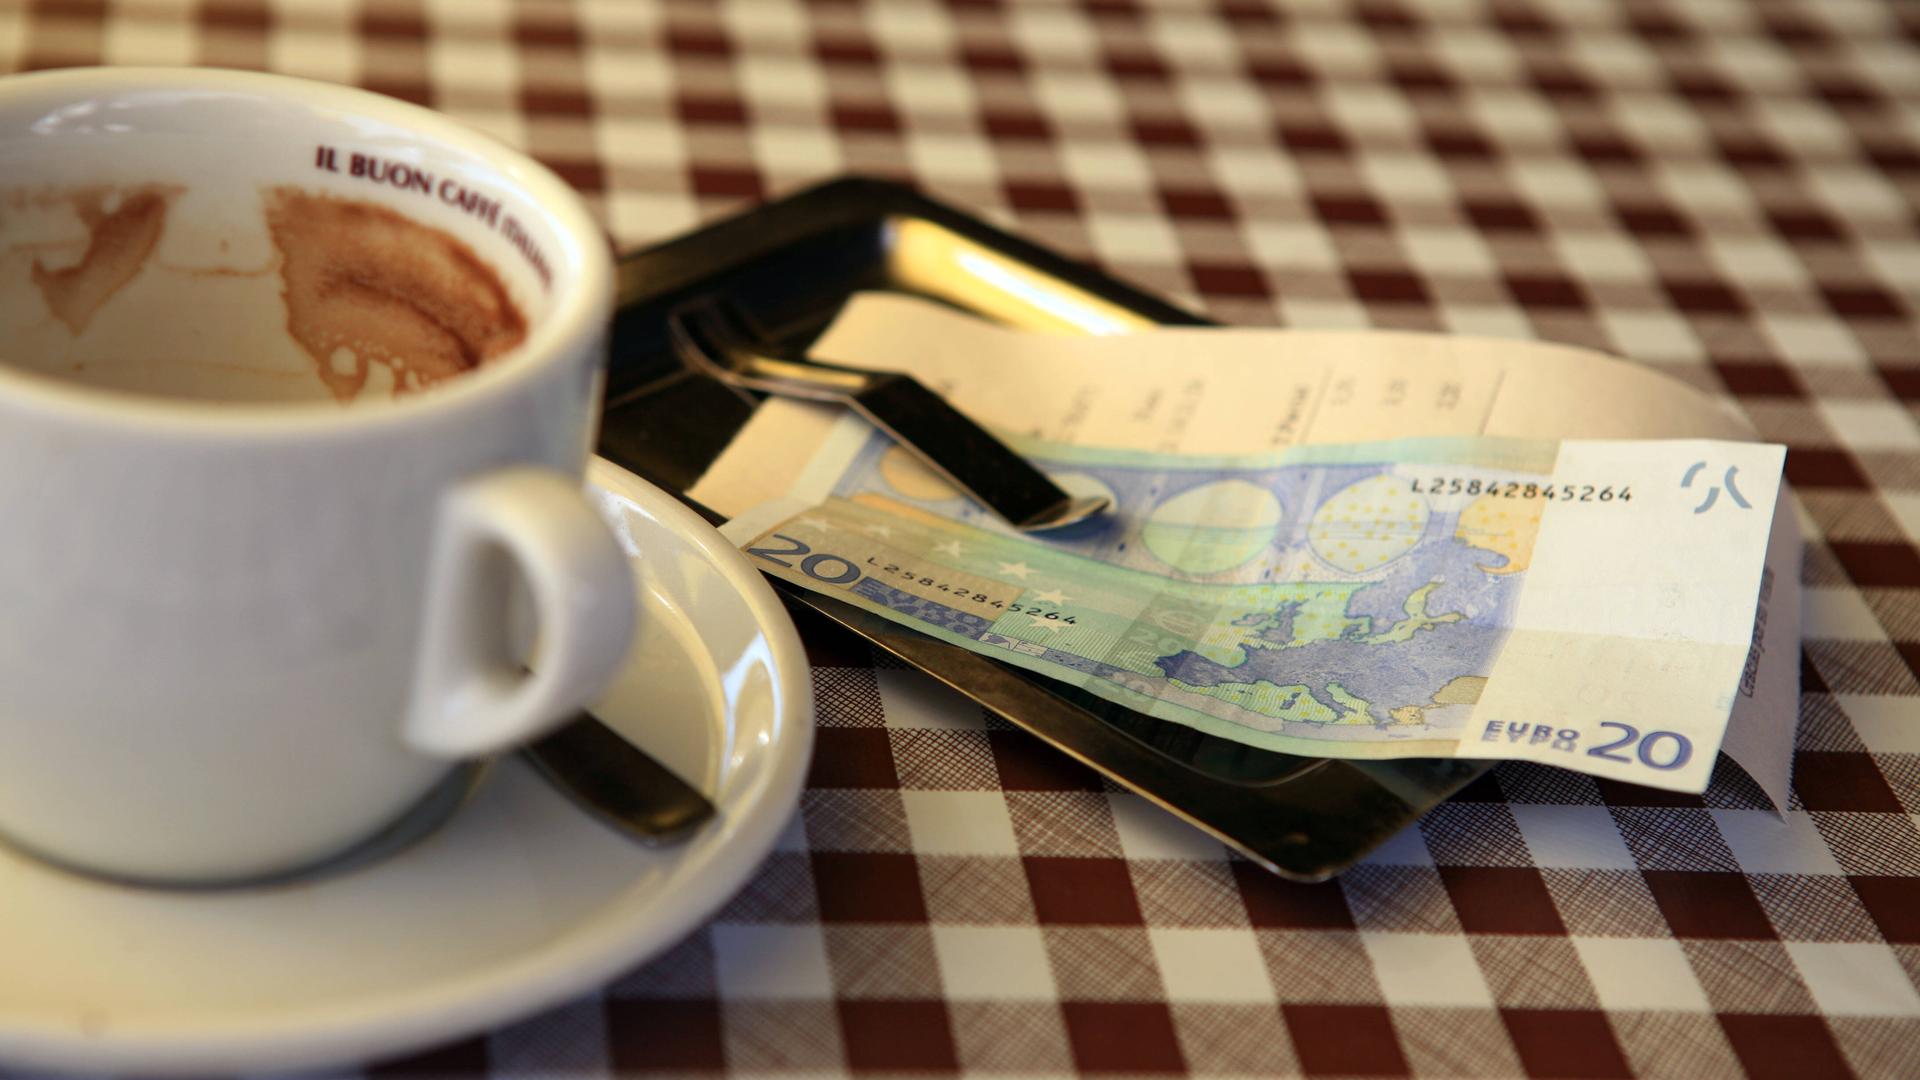 Leere Kaffeetasse mit Rechnung und Geldschein auf dem Tisch